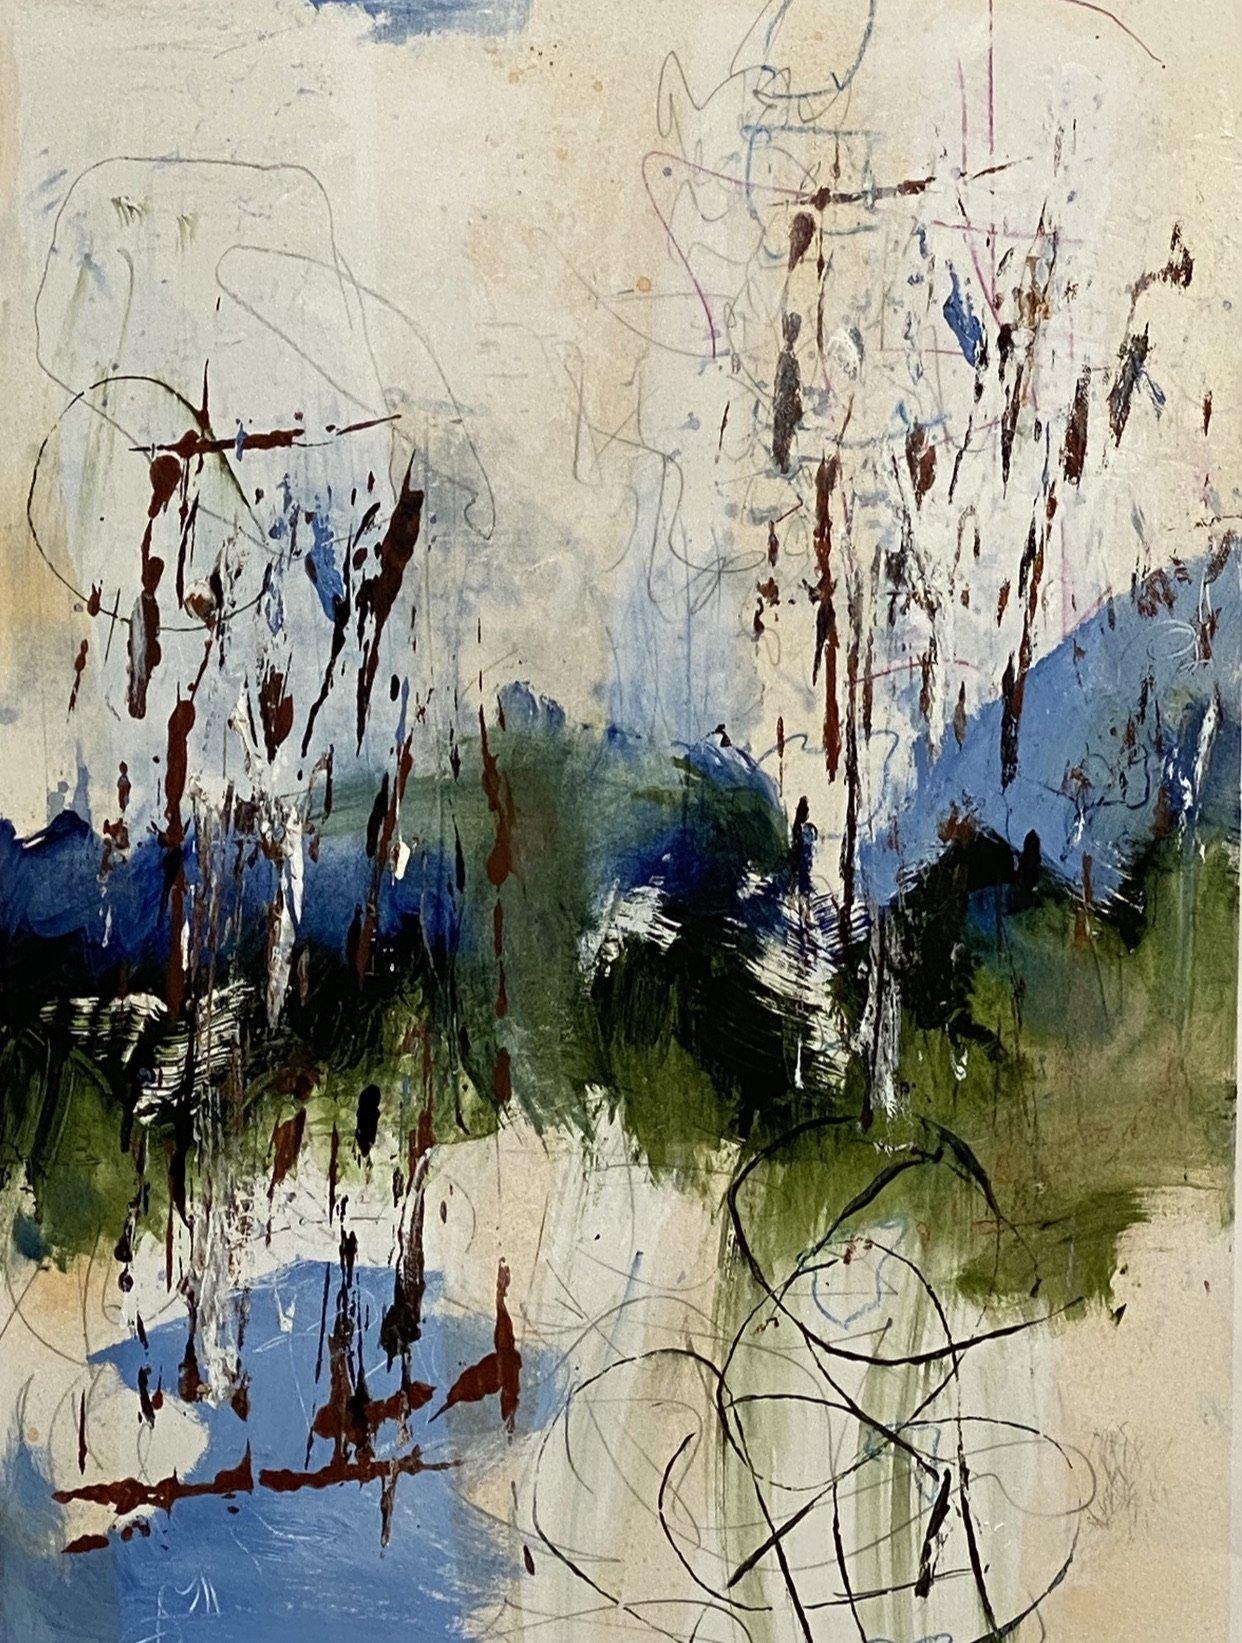 Summer Blue Ridge, impressionnisme contemporain, bleu, blanc, vert, sur papier